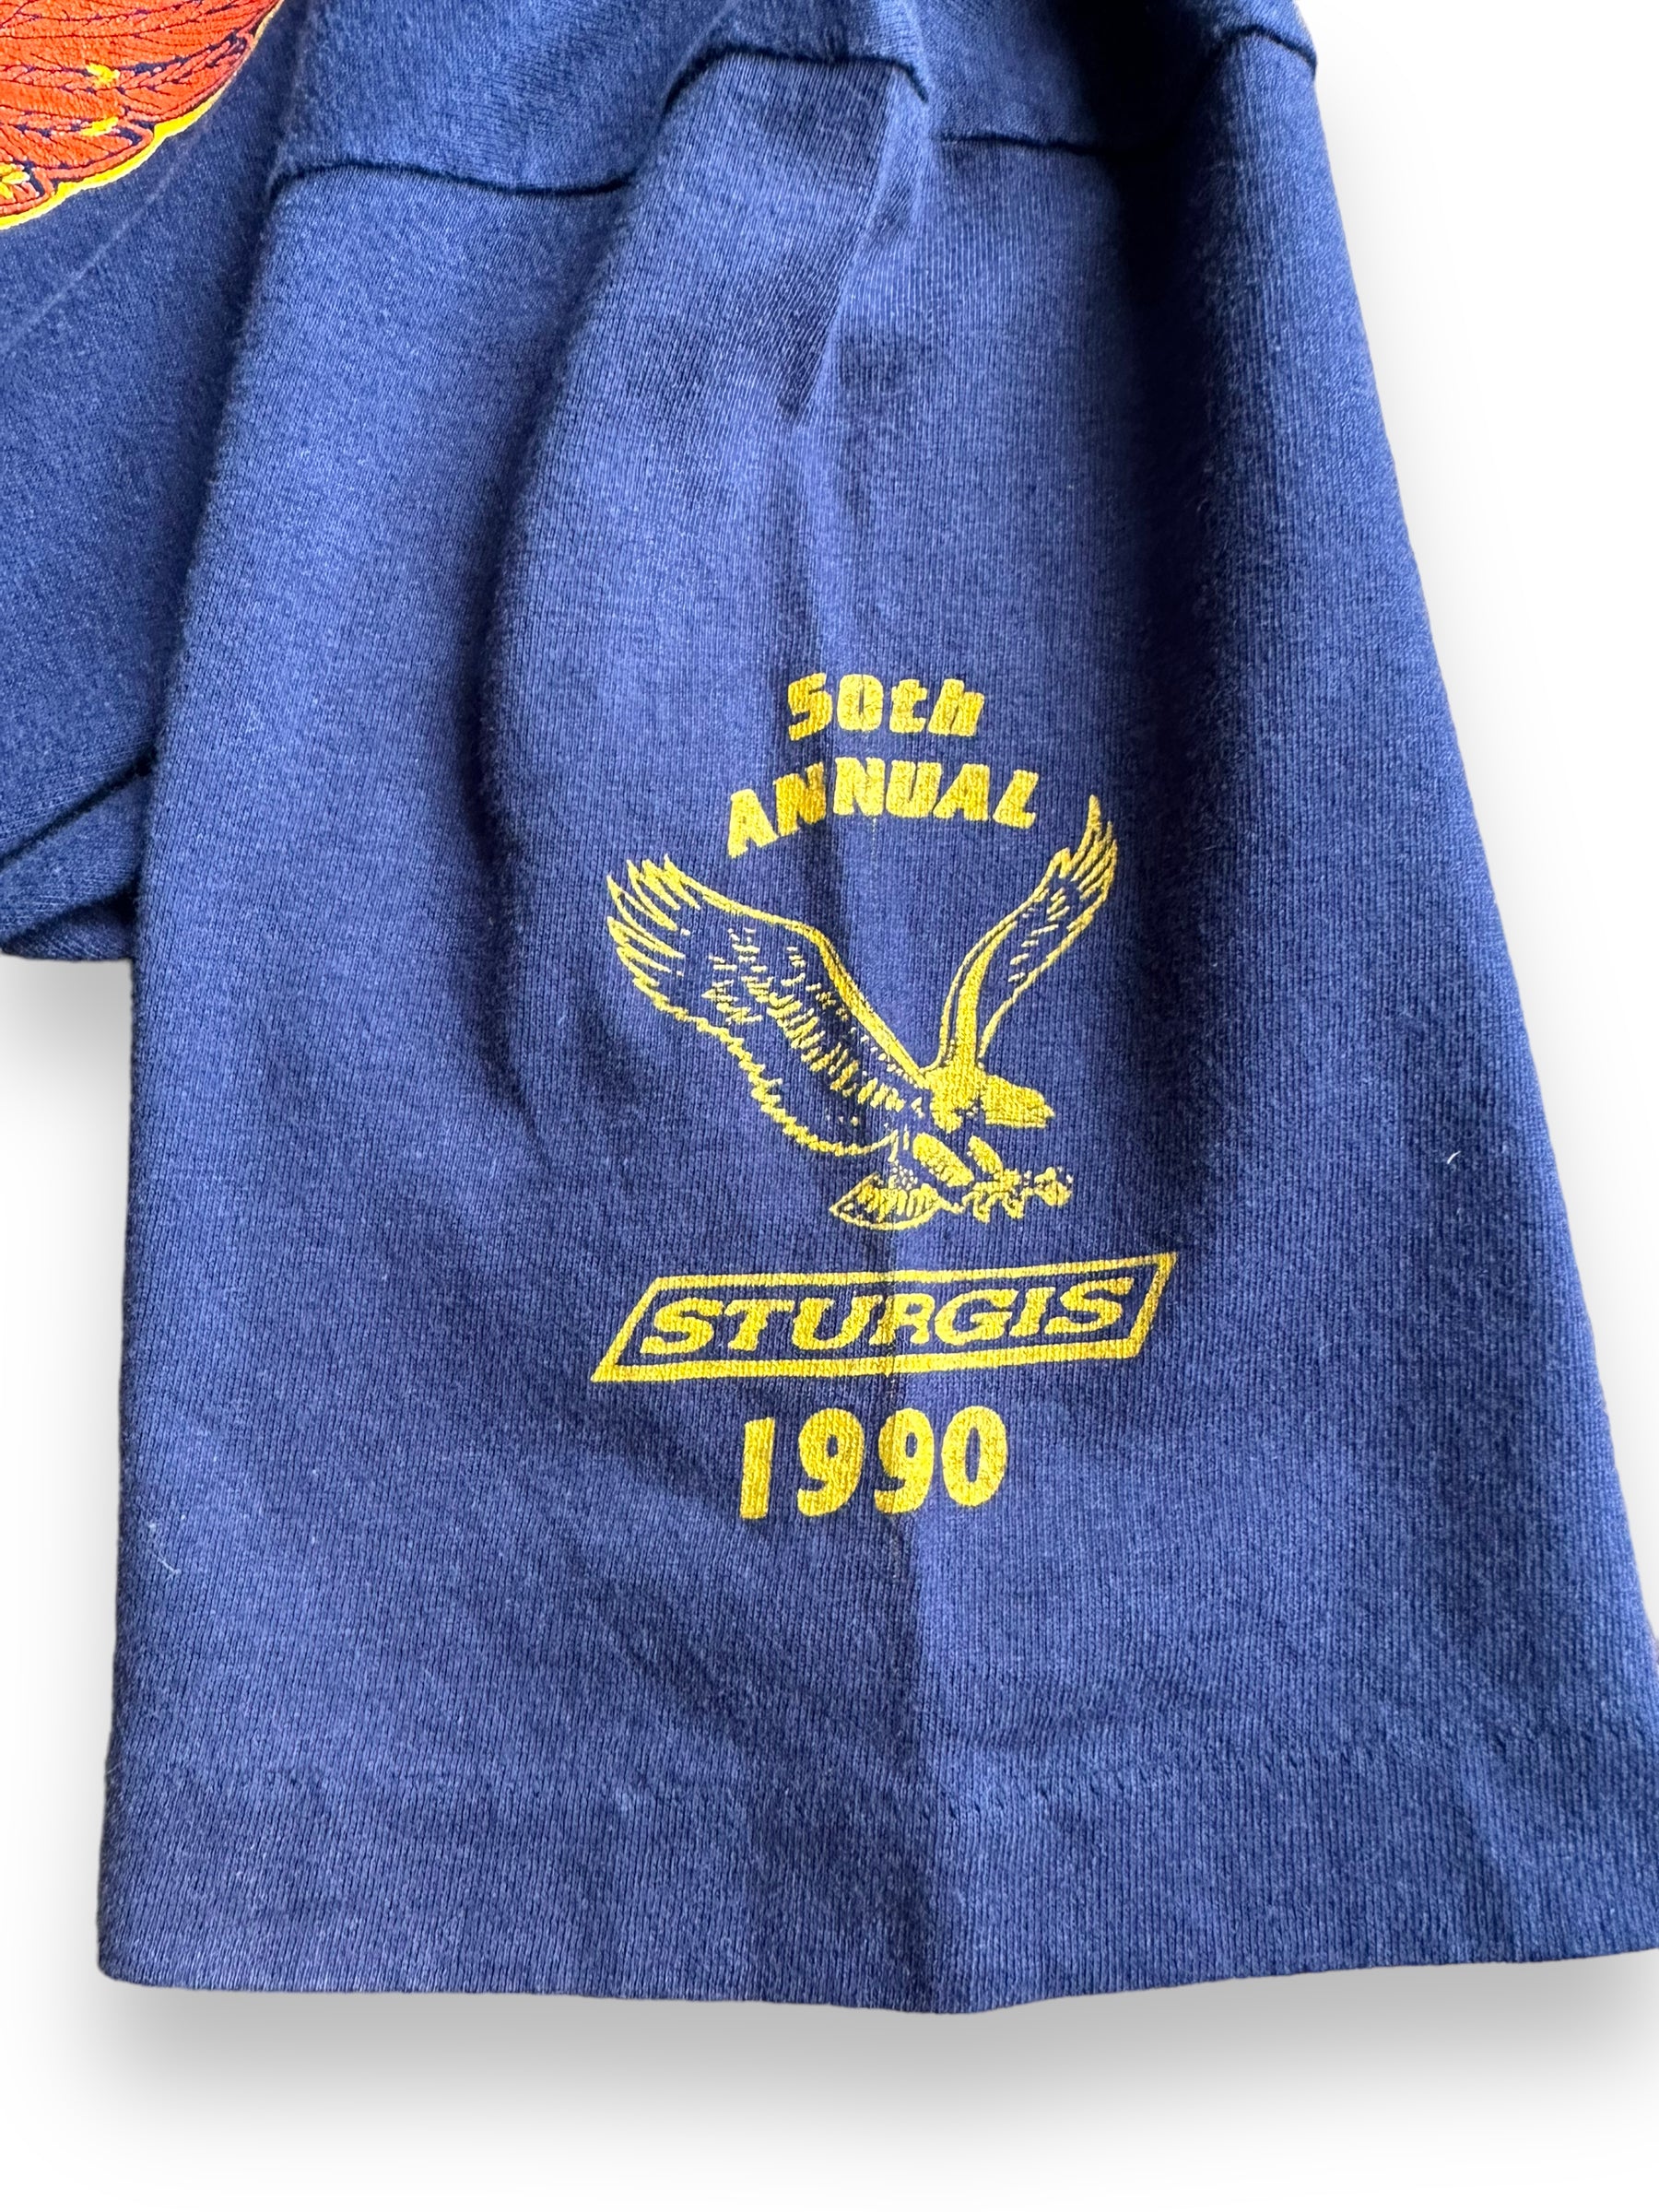 Left sleeve of '90 Blue Sturgis 50th Anniversary Tee SZ L | Vintage Harley Tee | Barn Owl Vintage Seattle